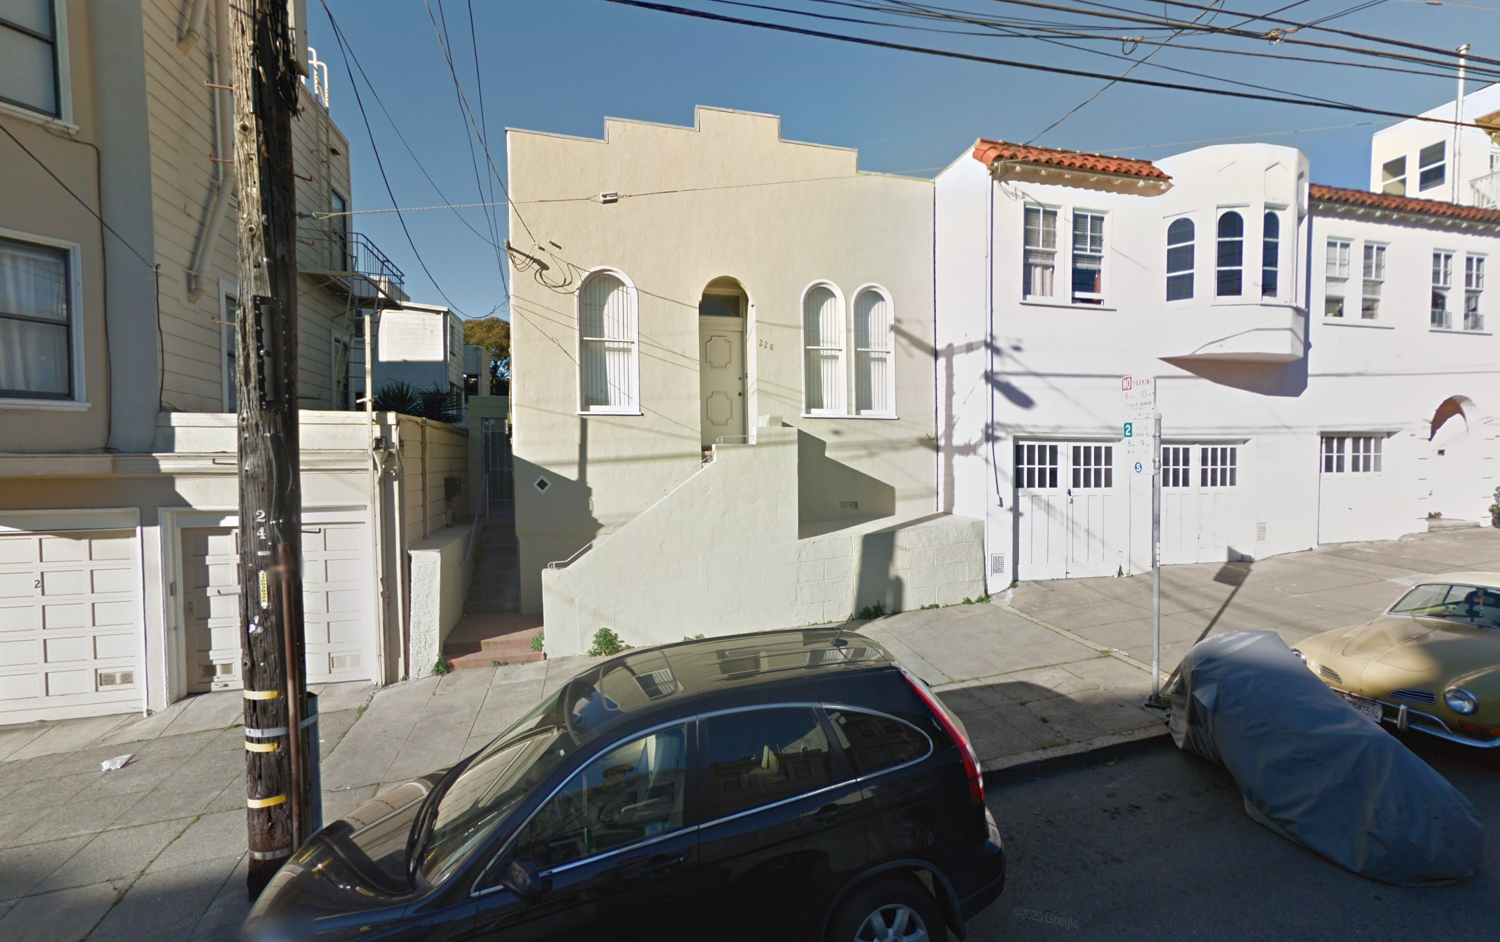 228 Vicksburg Street, via Google Street View